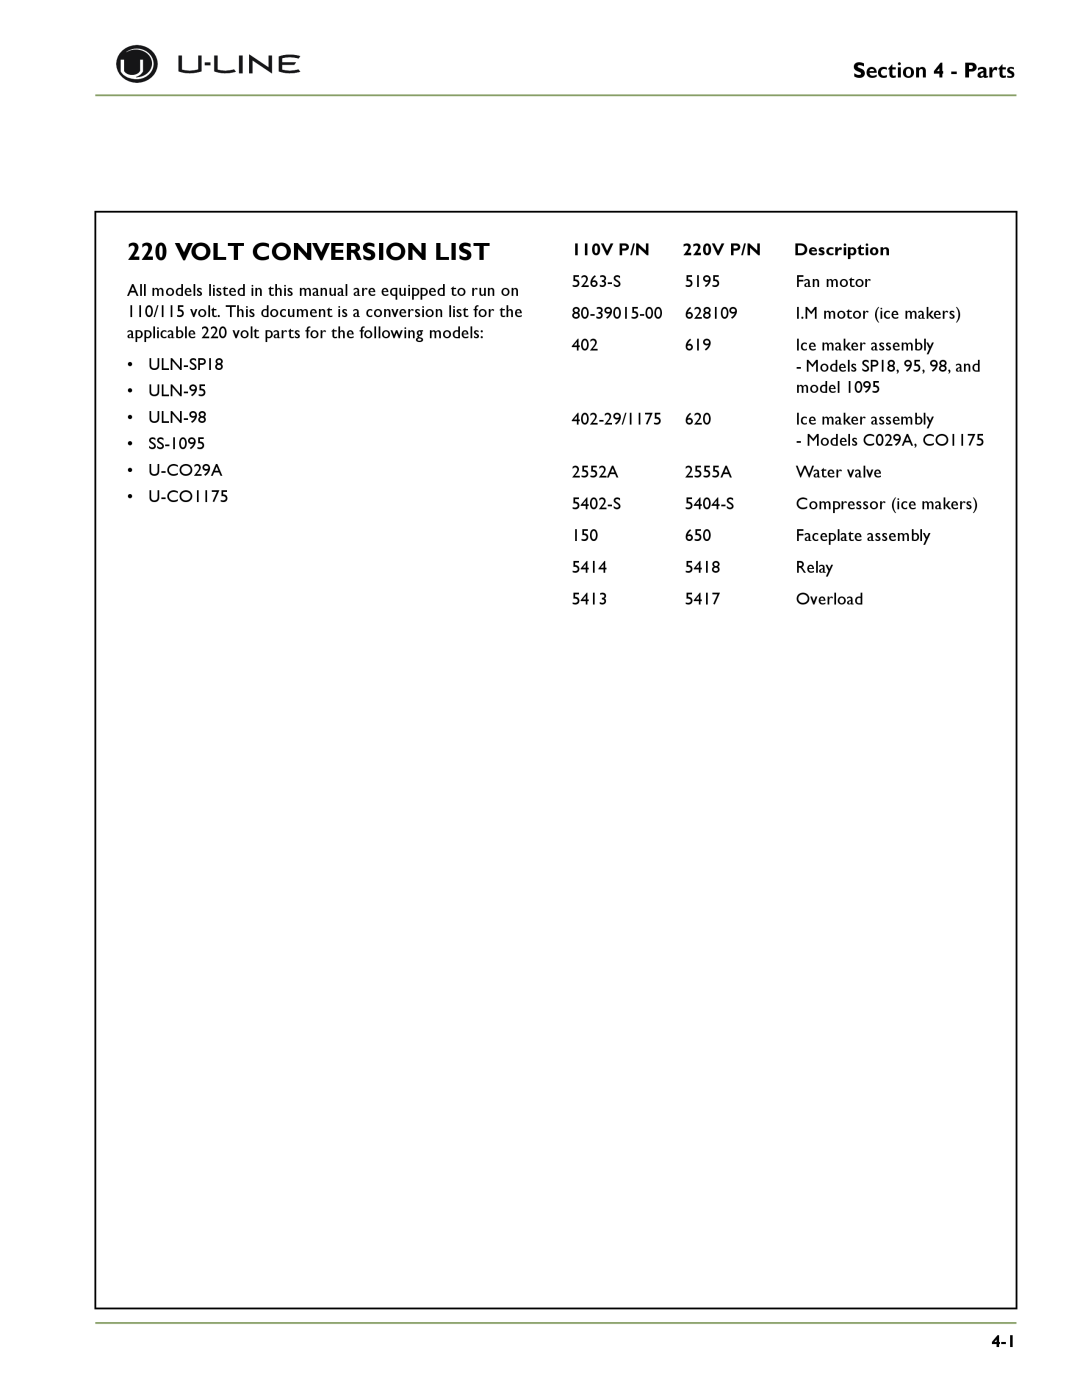 U-Line ULN-98, SP 18, U-1075BEV, U-1075WC, U-CO29A, U-CO29F Volt Conversion List, Parts, 110V P/N, 220V P/N, Description 